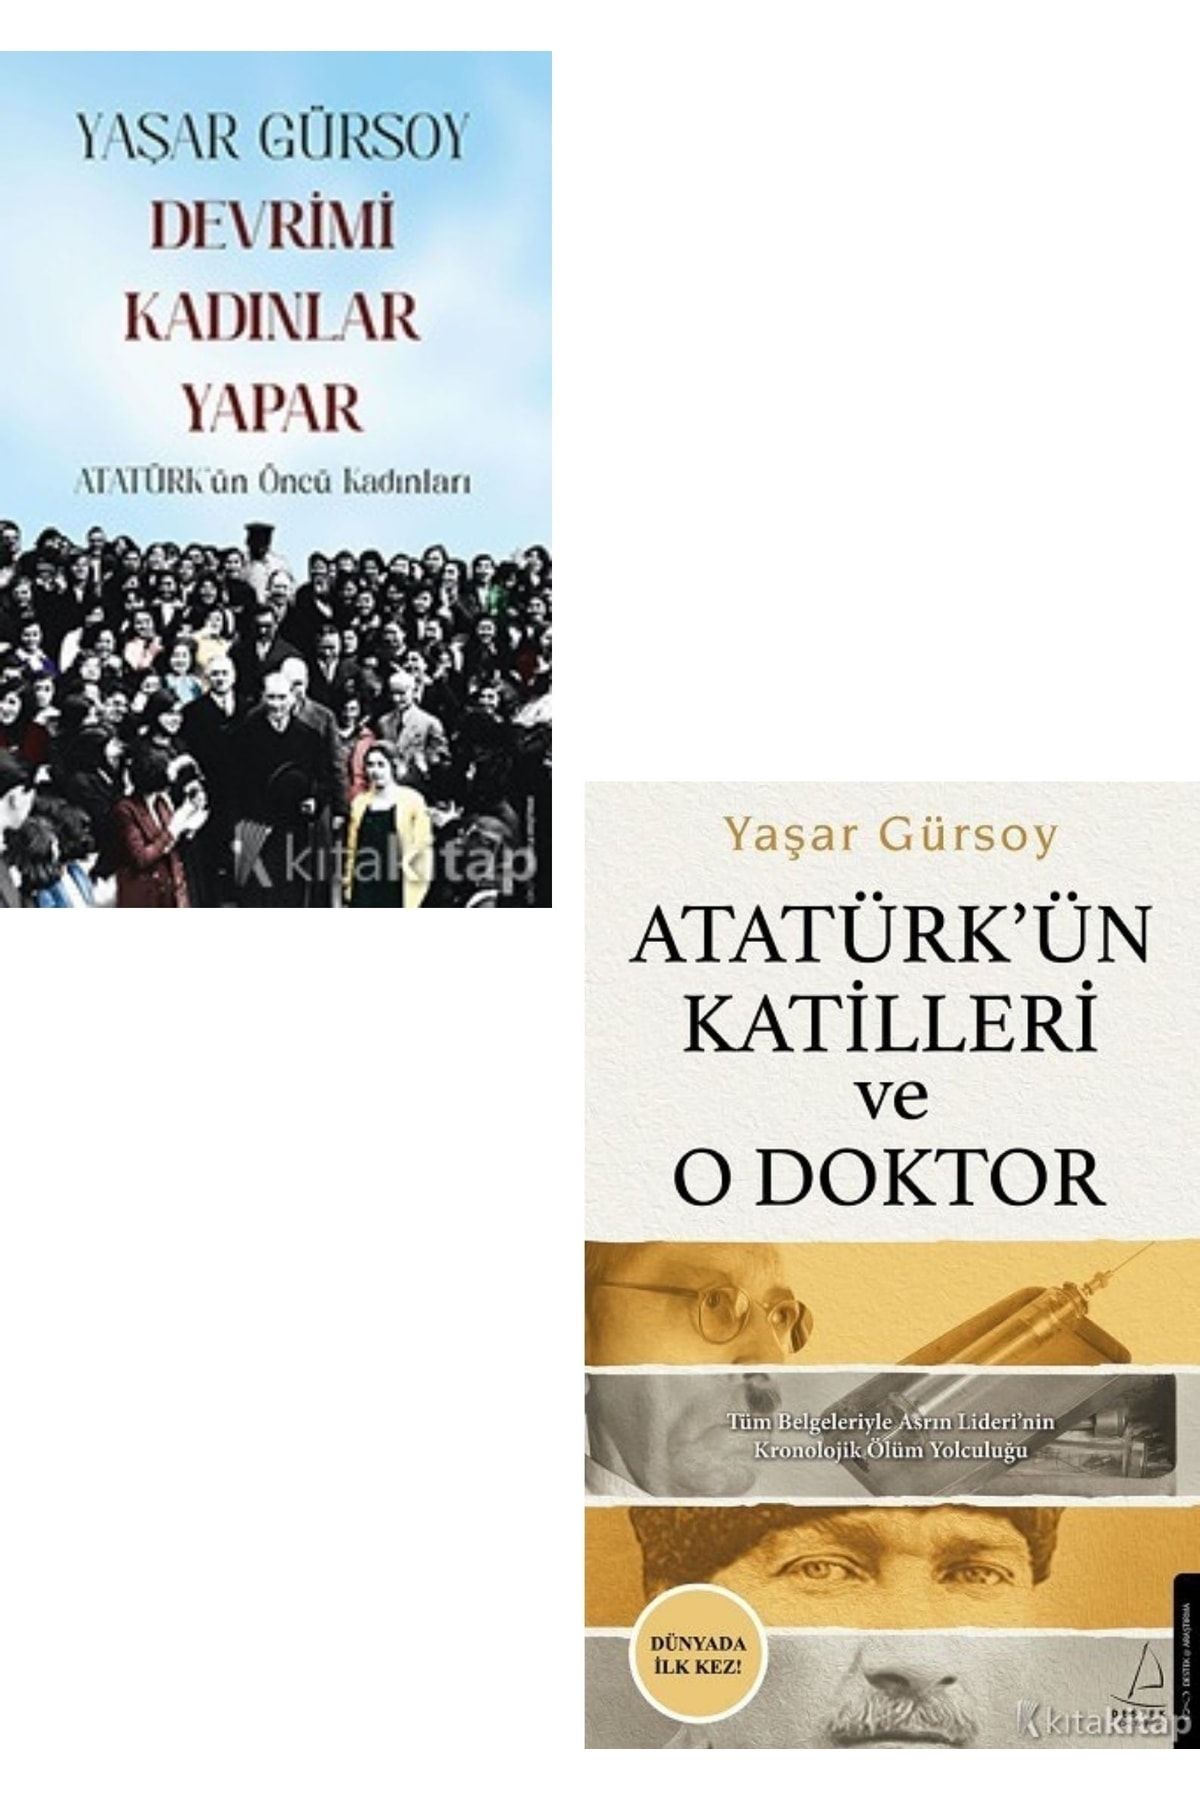 Destek Yayınları Devrimi Kadınlar Yapar - Atatürk’ün Katilleri Ve O Doktor - Yaşar Gürsoy 2 Kitap Set